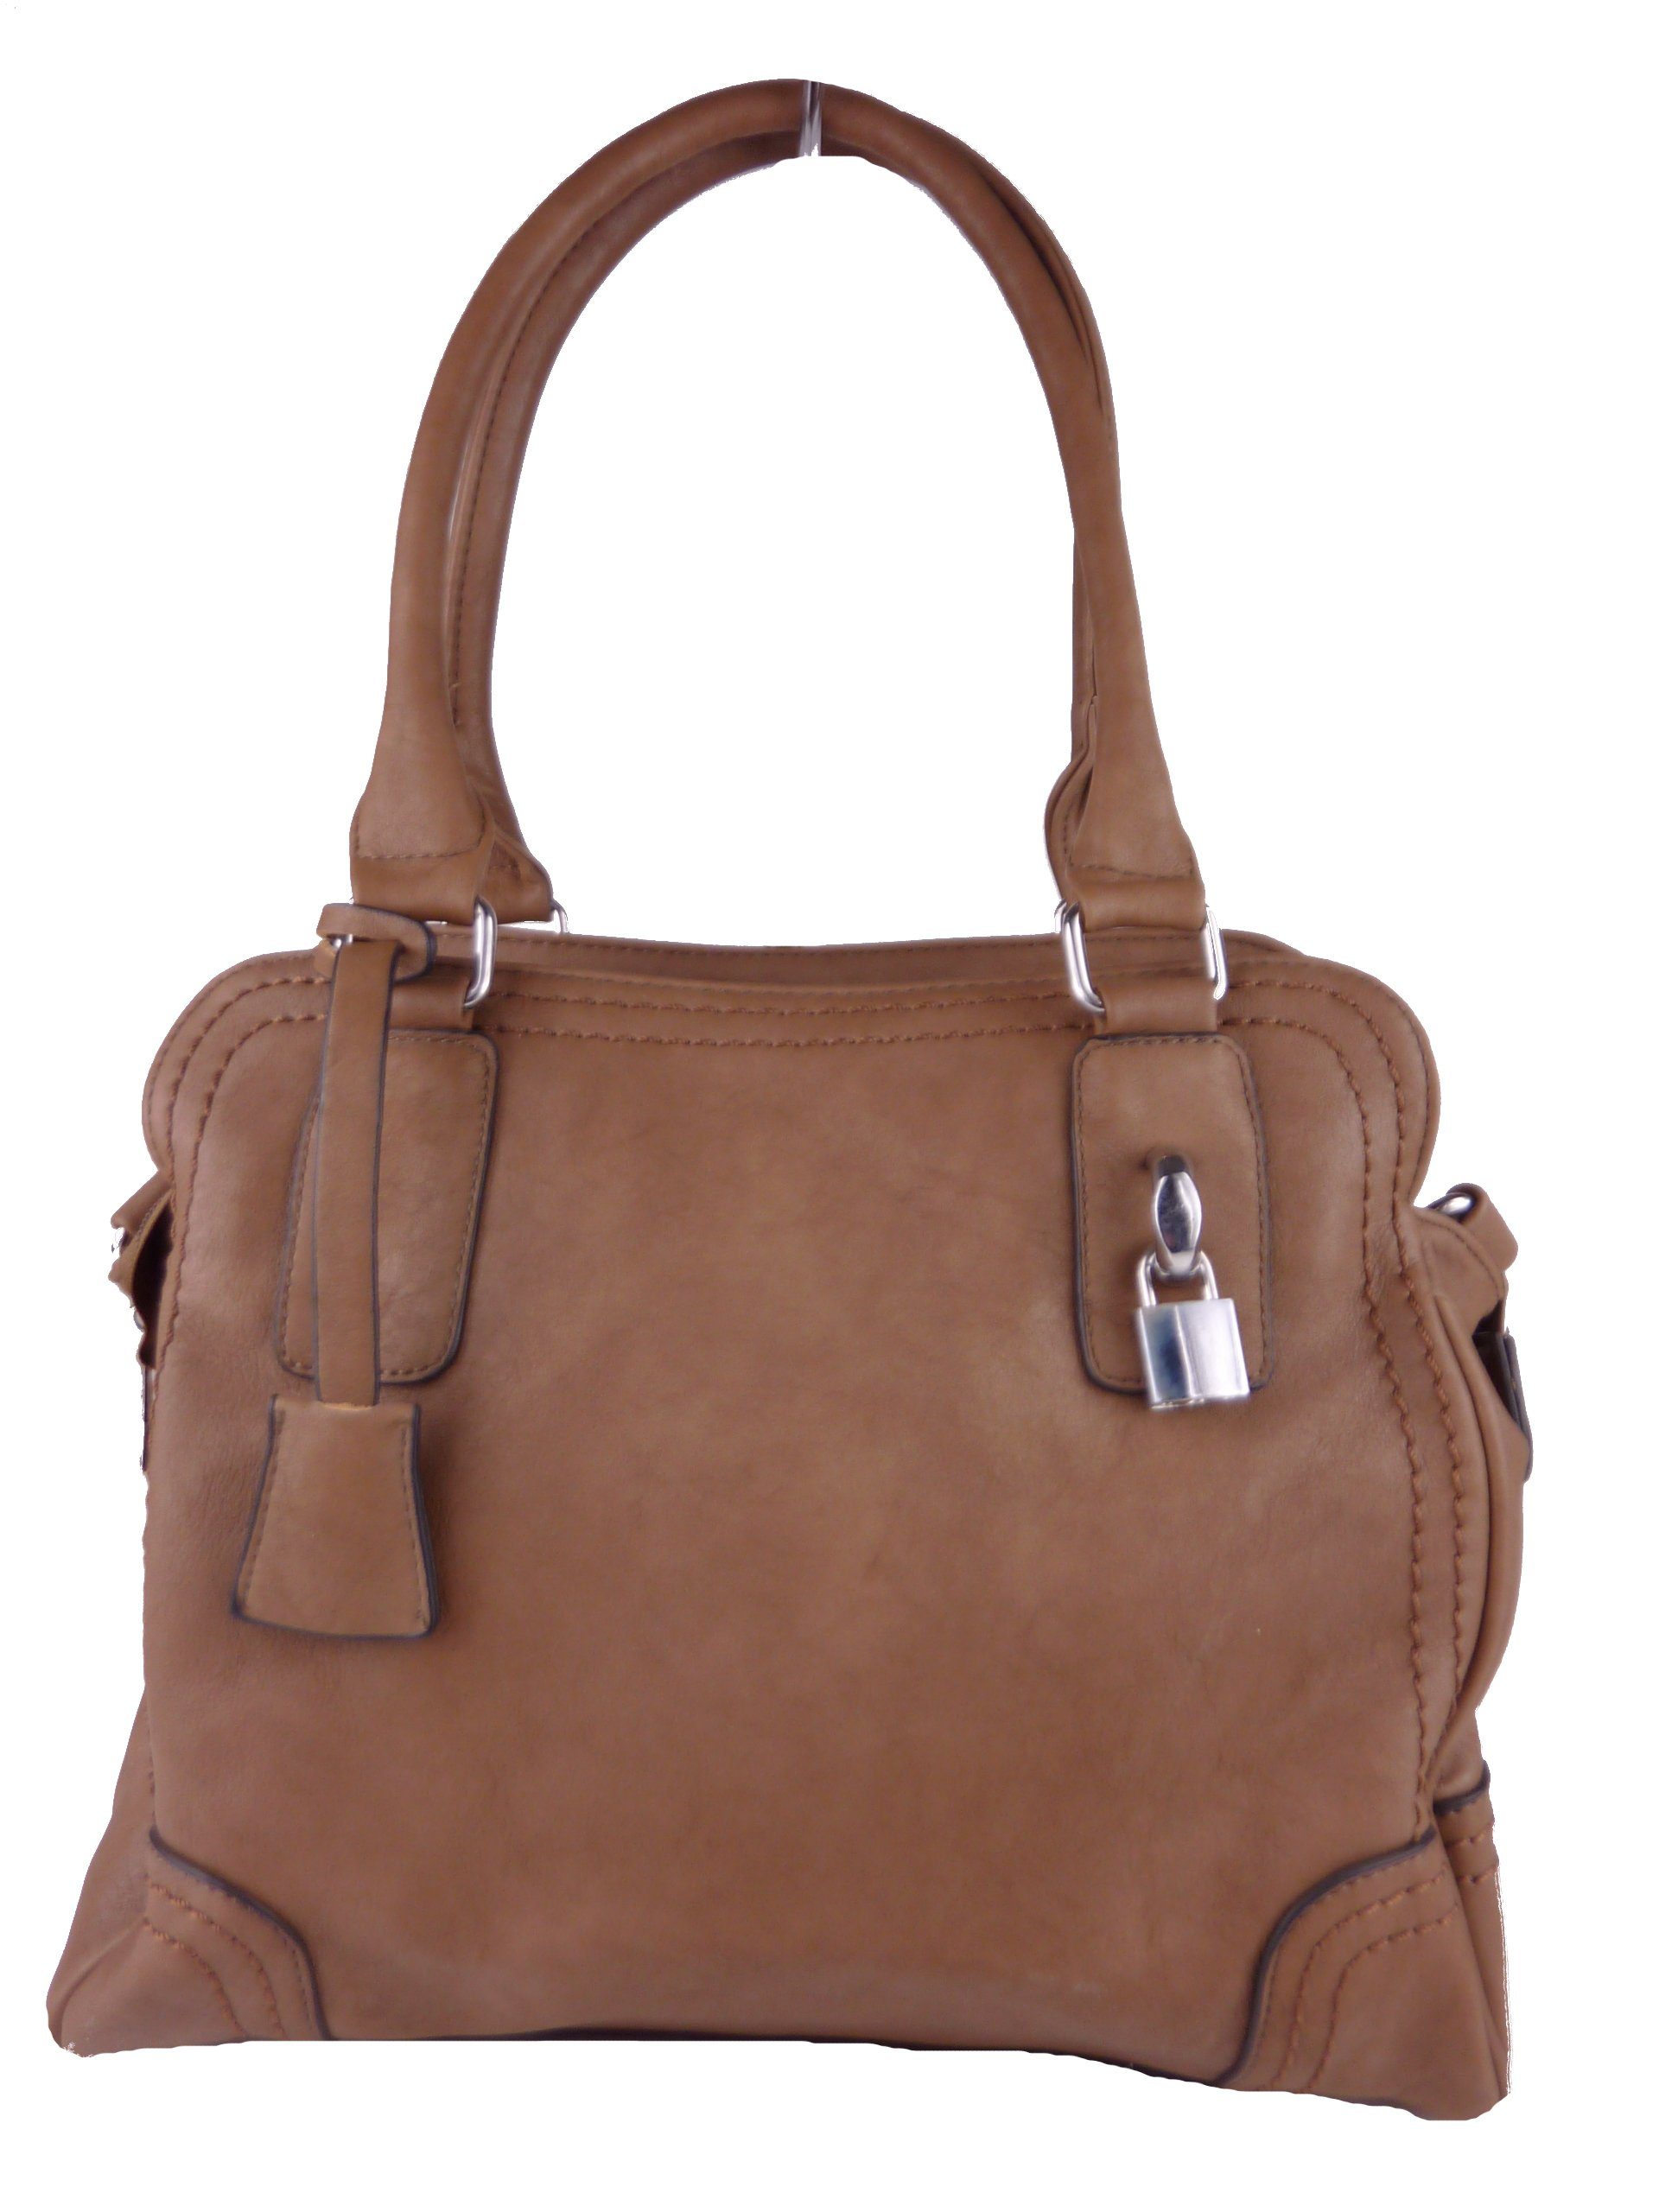 khaki Handtasche tote bag, elegante Handtasche klassische satchel hobo Schultertasche, Taschen4life C1125,